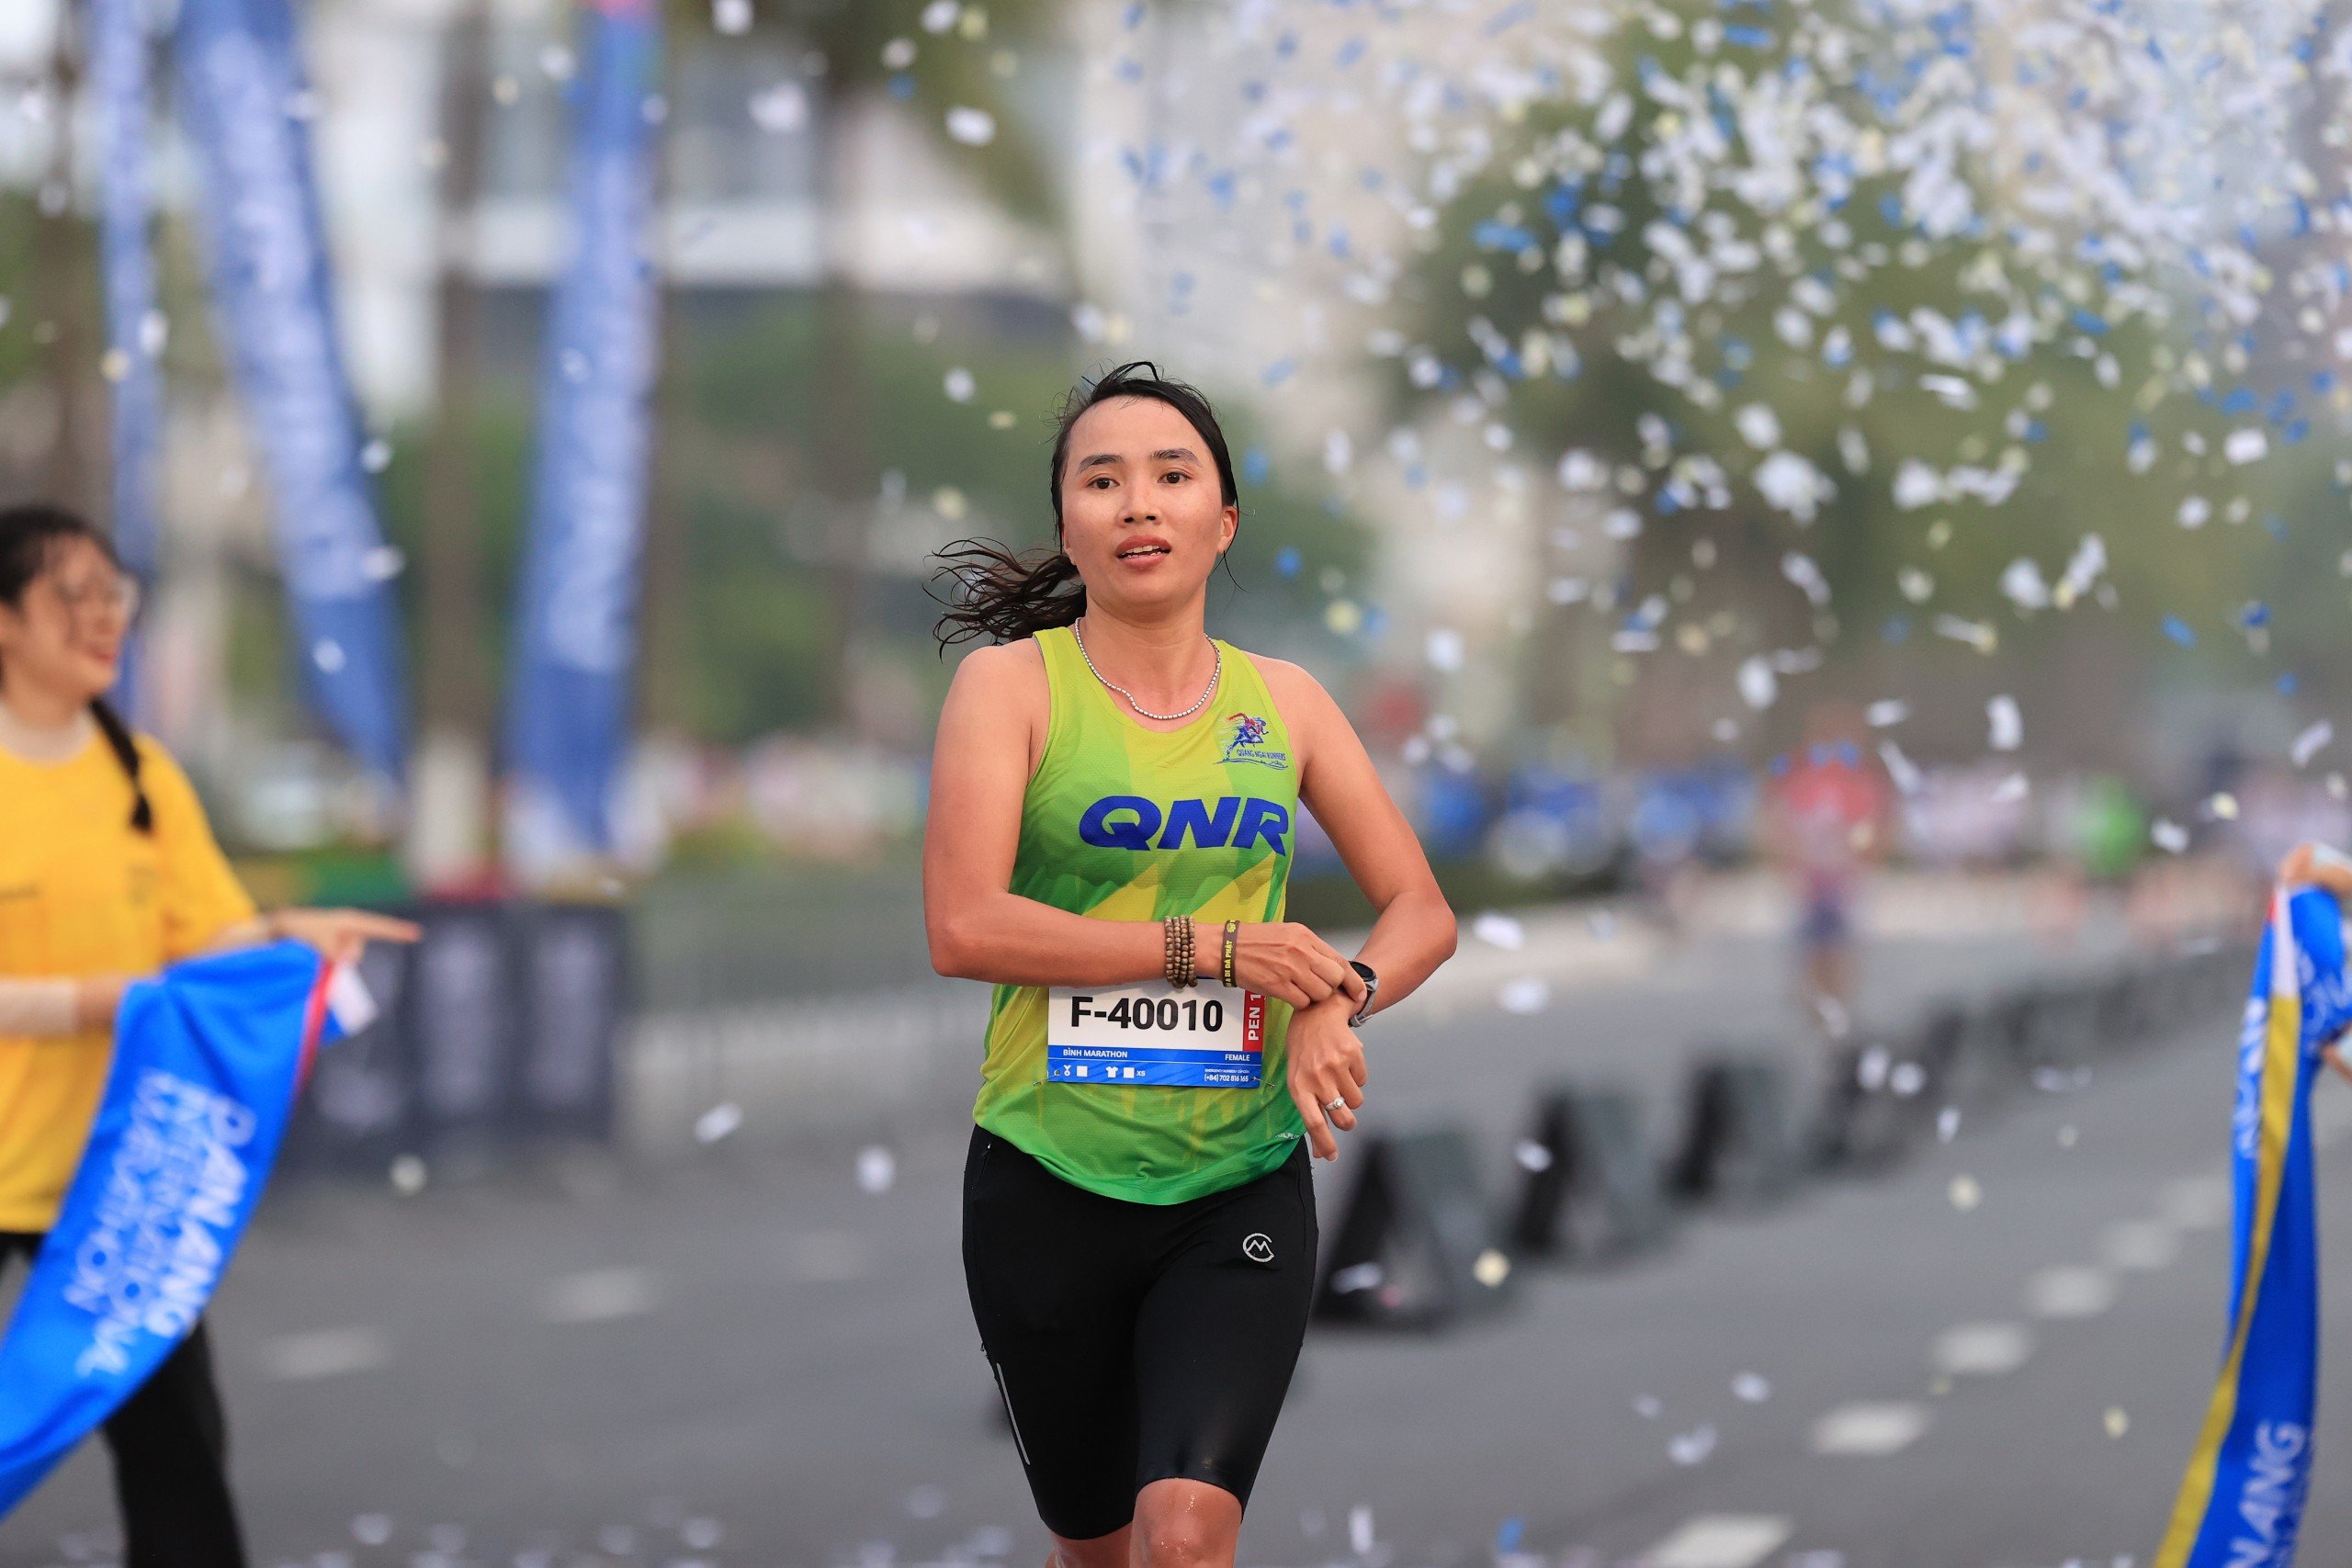 “Nữ hoàng chân đất” Phạm Thị Bình chiến thắng cuộc thi marathon quốc tế Đà Nẵng - Ảnh 3.